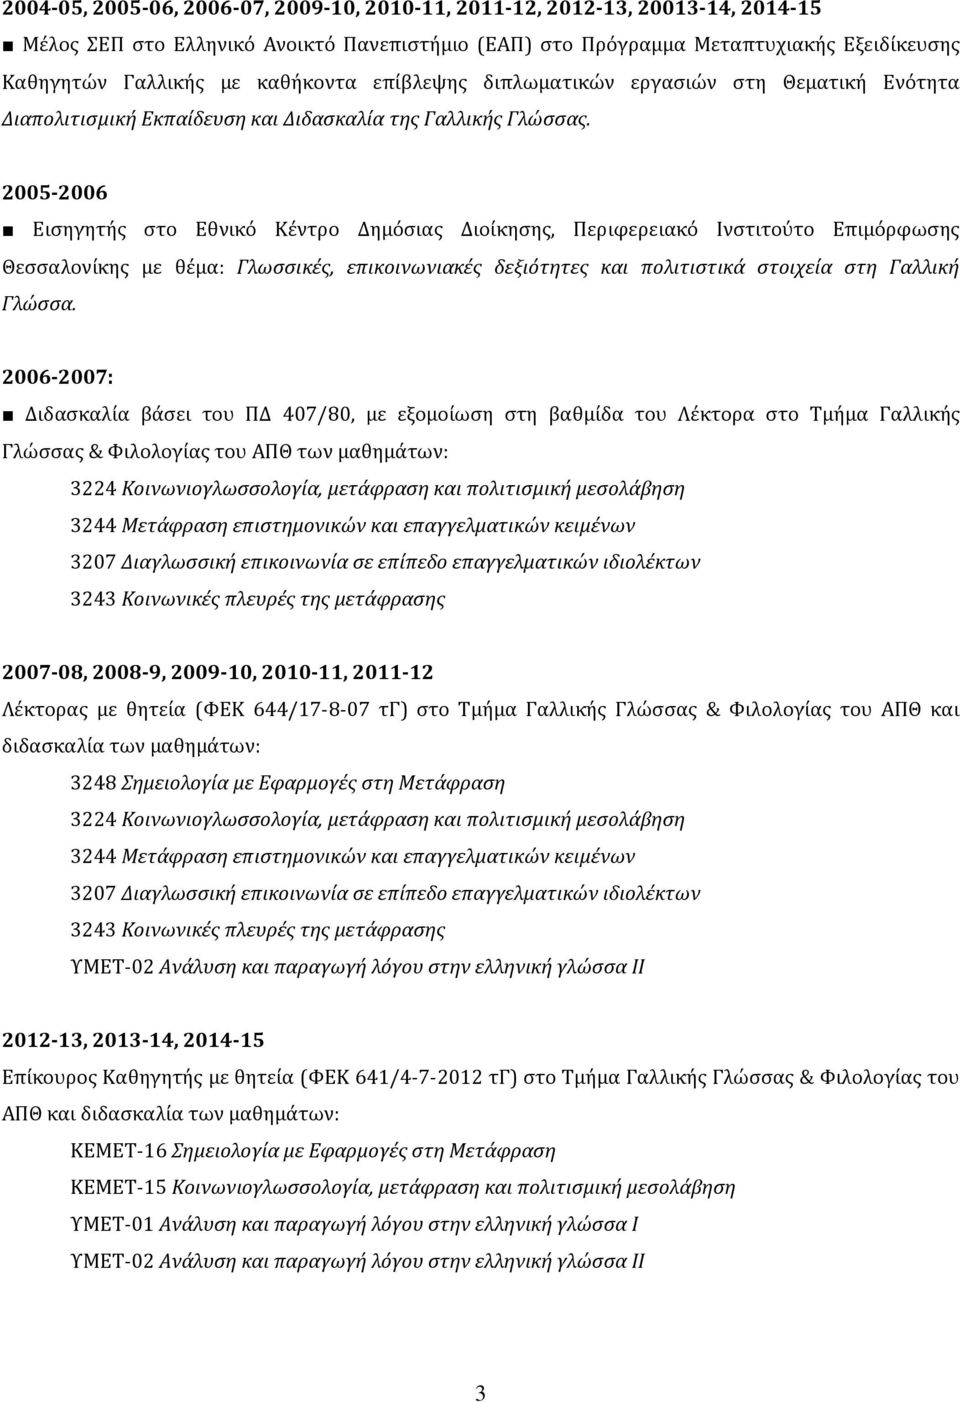 2005-2006 Εισηγητής στο Εθνικό Κέντρο Δημόσιας Διοίκησης, Περιφερειακό Ινστιτούτο Επιμόρφωσης Θεσσαλονίκης με θέμα: Γλωσσικές, επικοινωνιακές δεξιότητες και πολιτιστικά στοιχεία στη Γαλλική Γλώσσα.